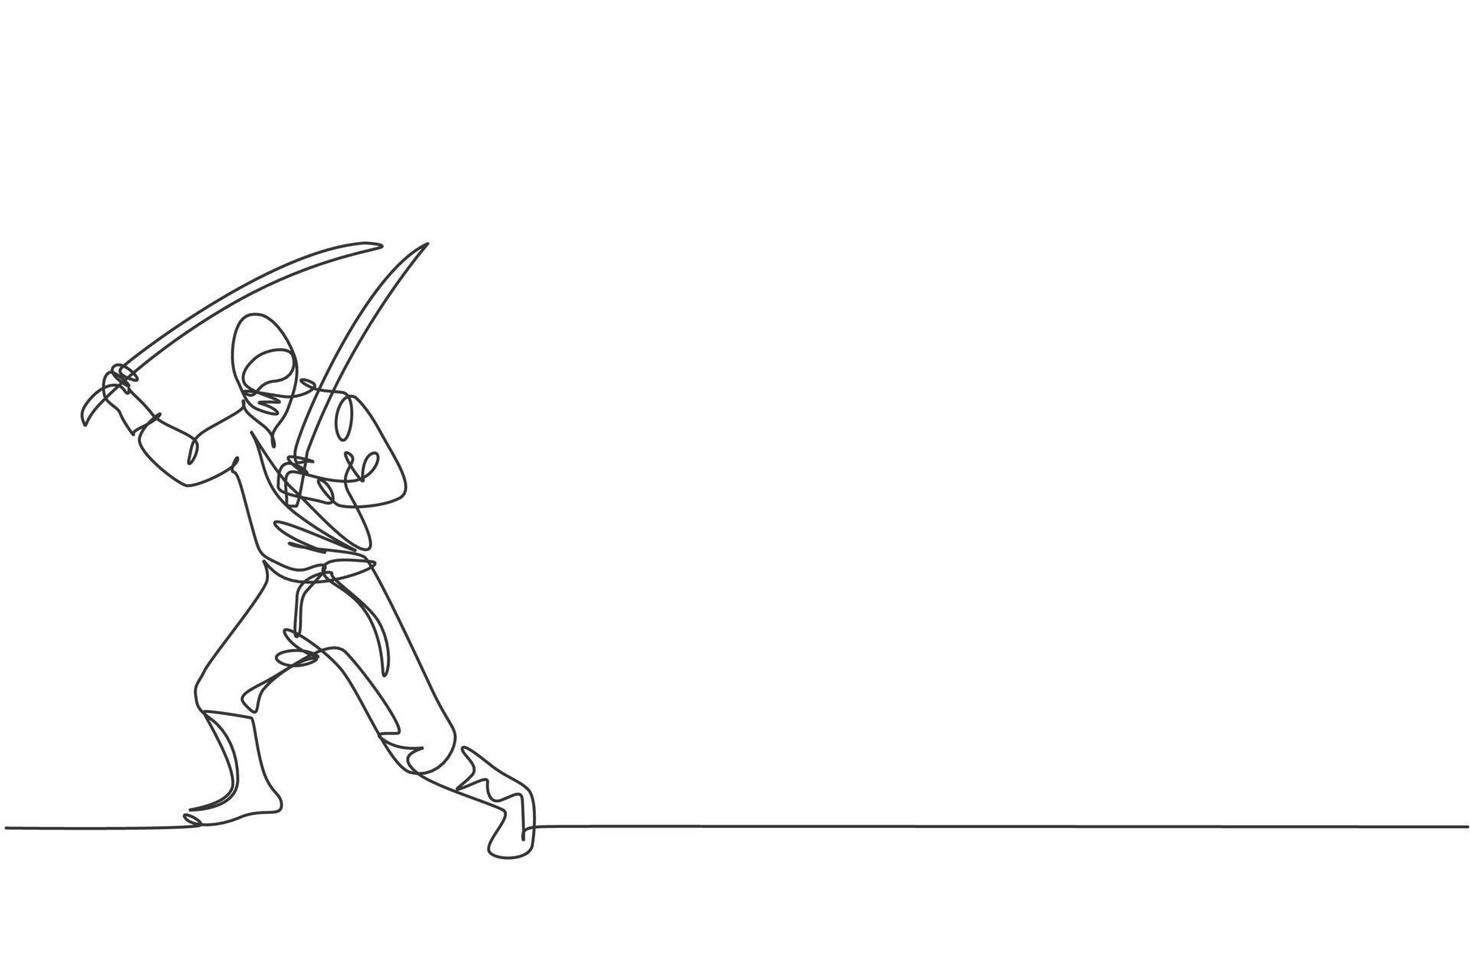 en enda linjeteckning av ung energisk japansk traditionell ninja som håller samuraisvärd på attack poserar vektorillustration. stridbar kampsport sport koncept. modern kontinuerlig linjeritningsdesign vektor